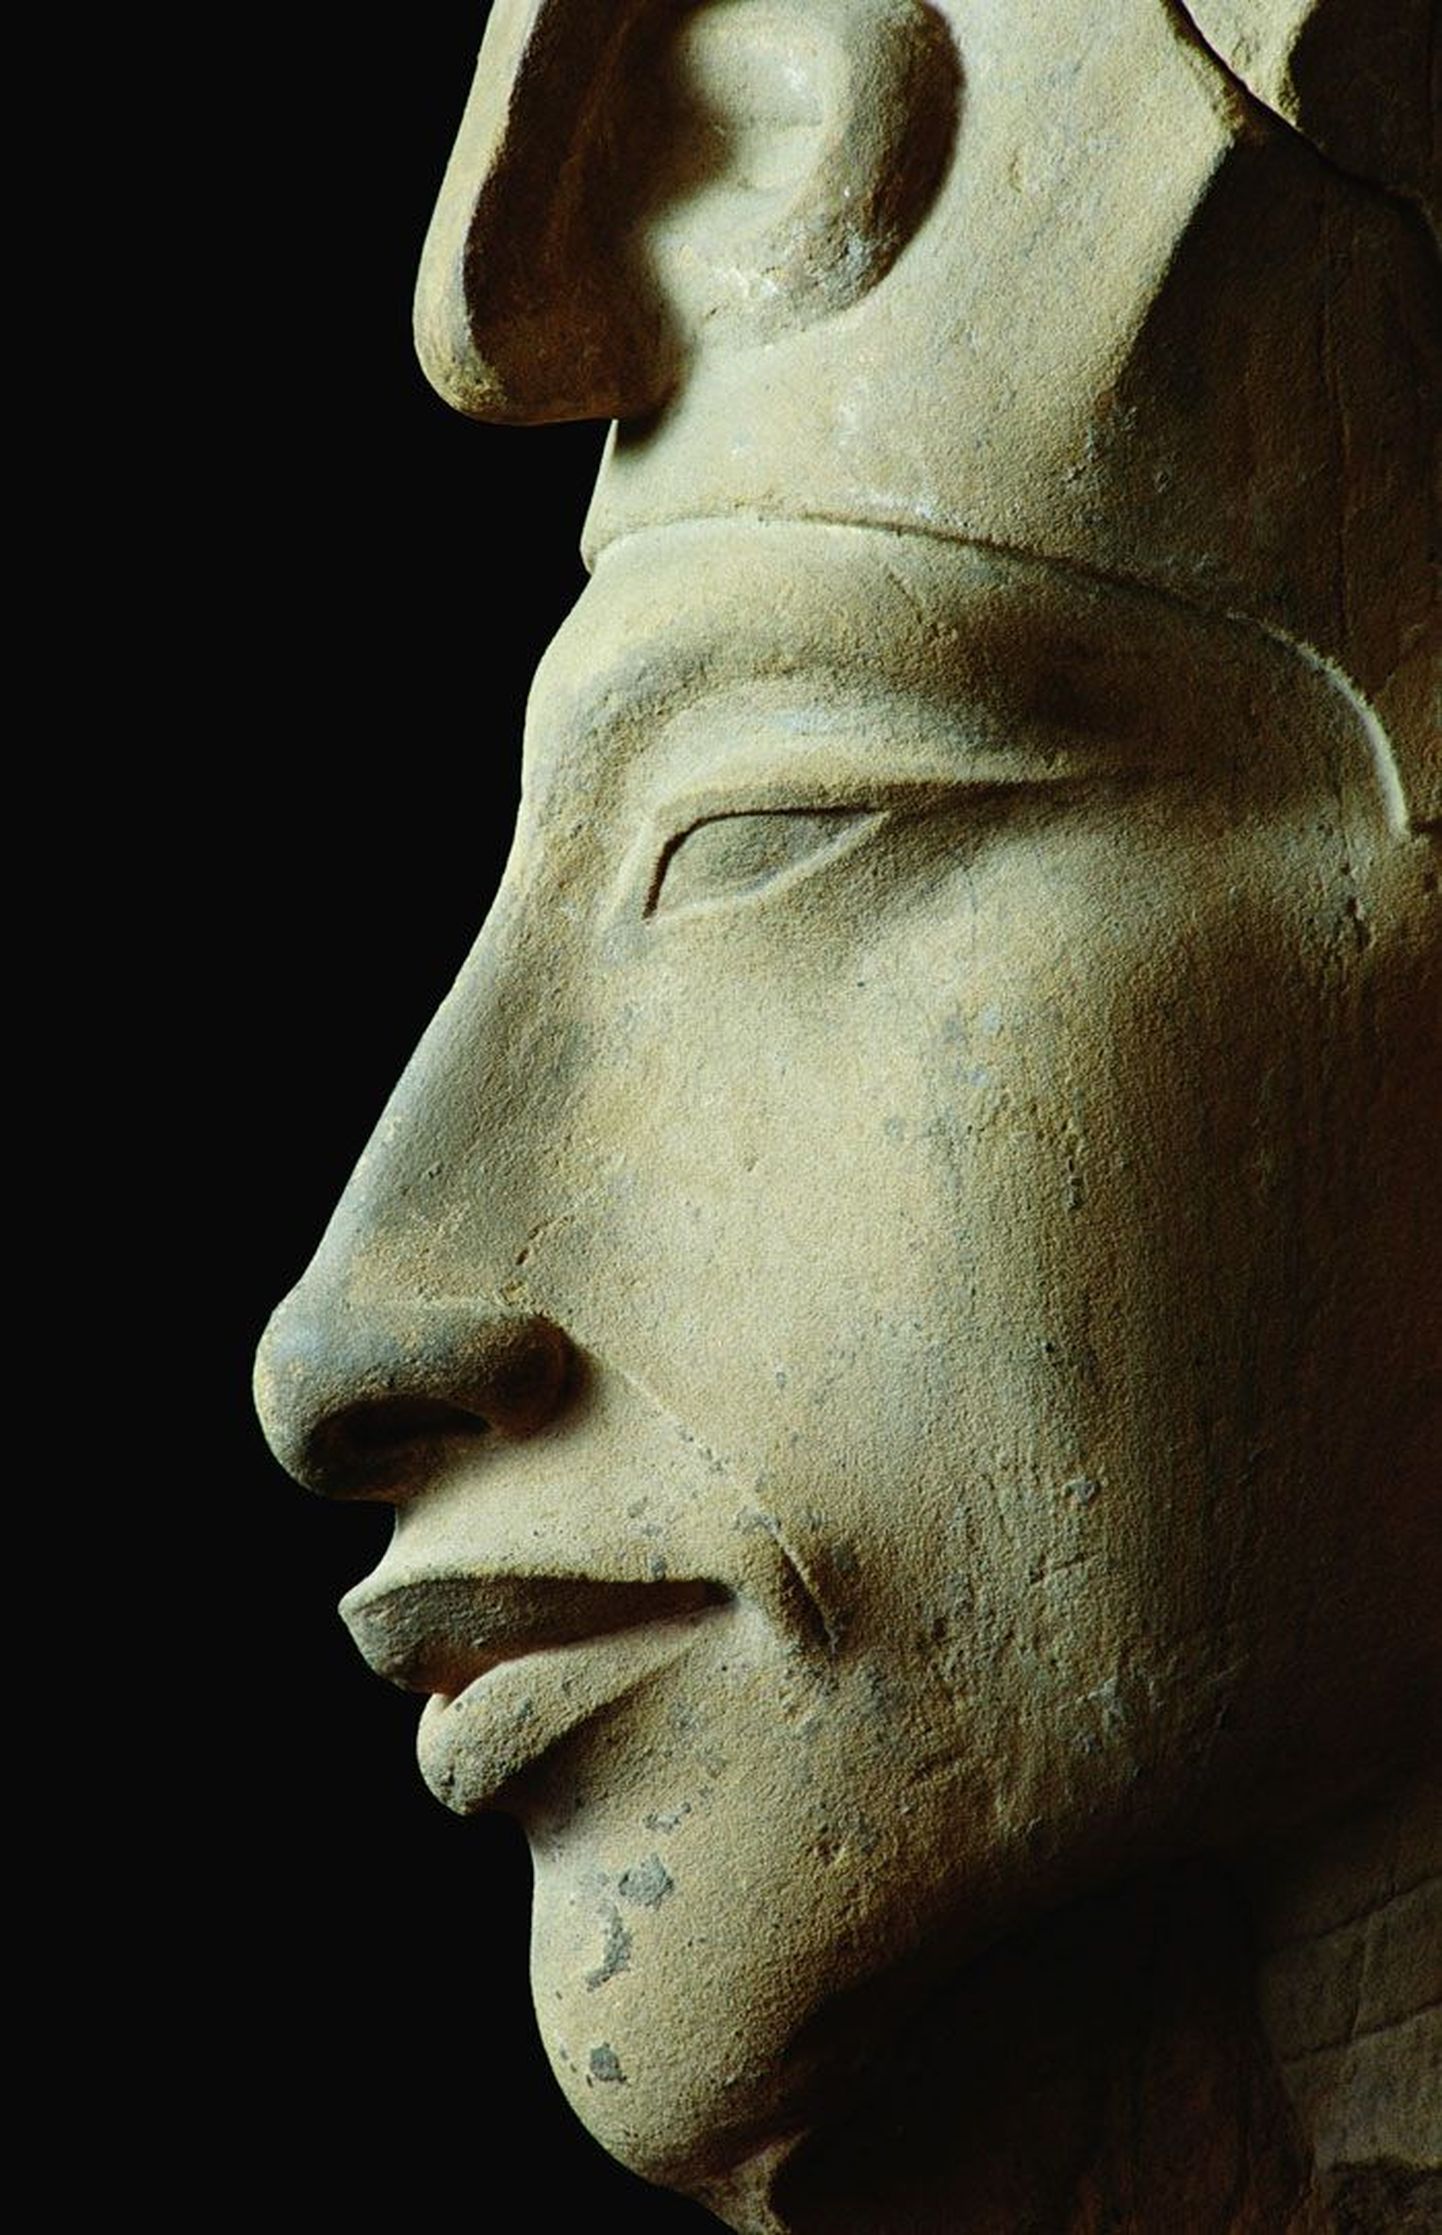 Ehnaton ehk Amenhotep IV oli Egiptuse 18. dünastia vaarao ja temal on oluline roll Mika Waltari «Sinuhes».